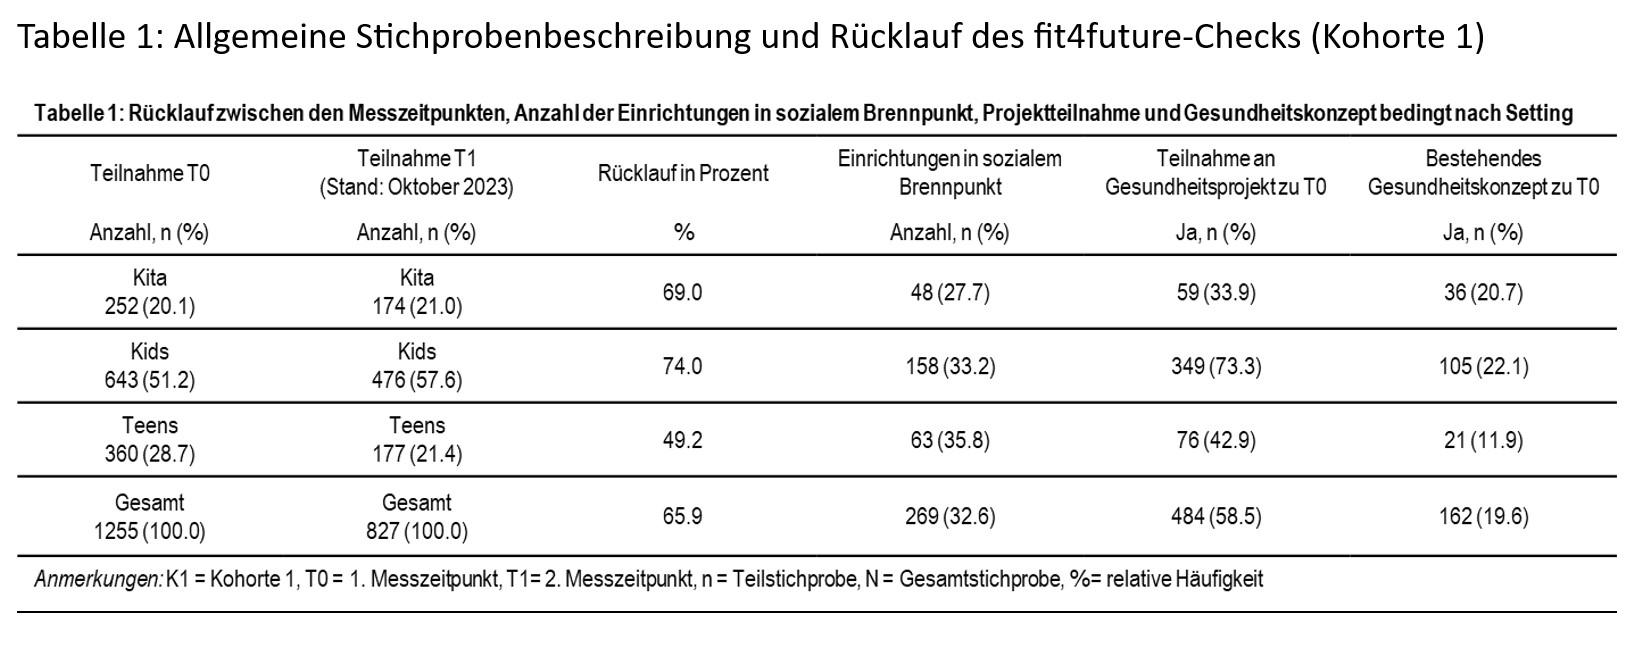 fit4future-Analyse: Tabelle zu "Allgemeine Stichprobenbeschreibung und Rücklauf des fit4future-Checks (Kohorte 1)".